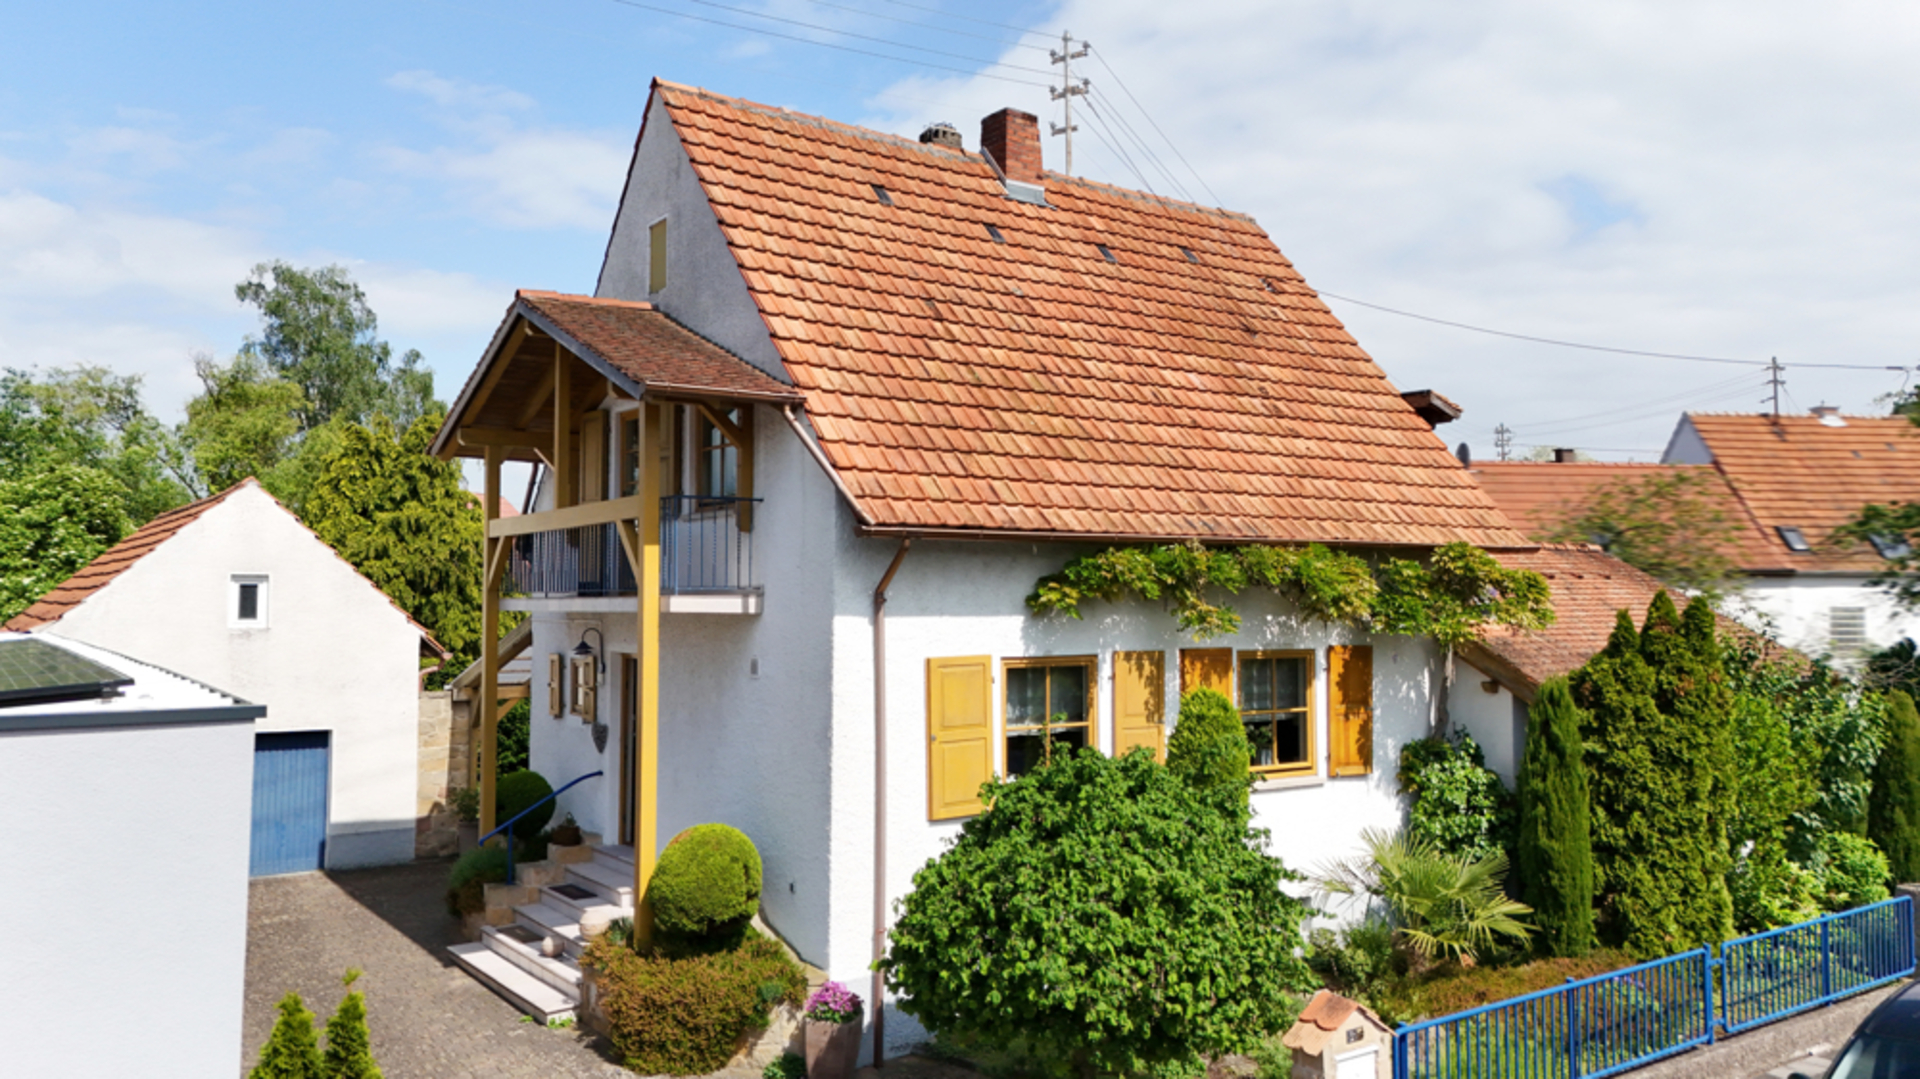 Charmantes Einfamilienhaus mit gemütlicher Terrasse und malerischem Garten in Böhl-Iggelheim, 67459 Böhl-Iggelheim, Einfamilienhaus